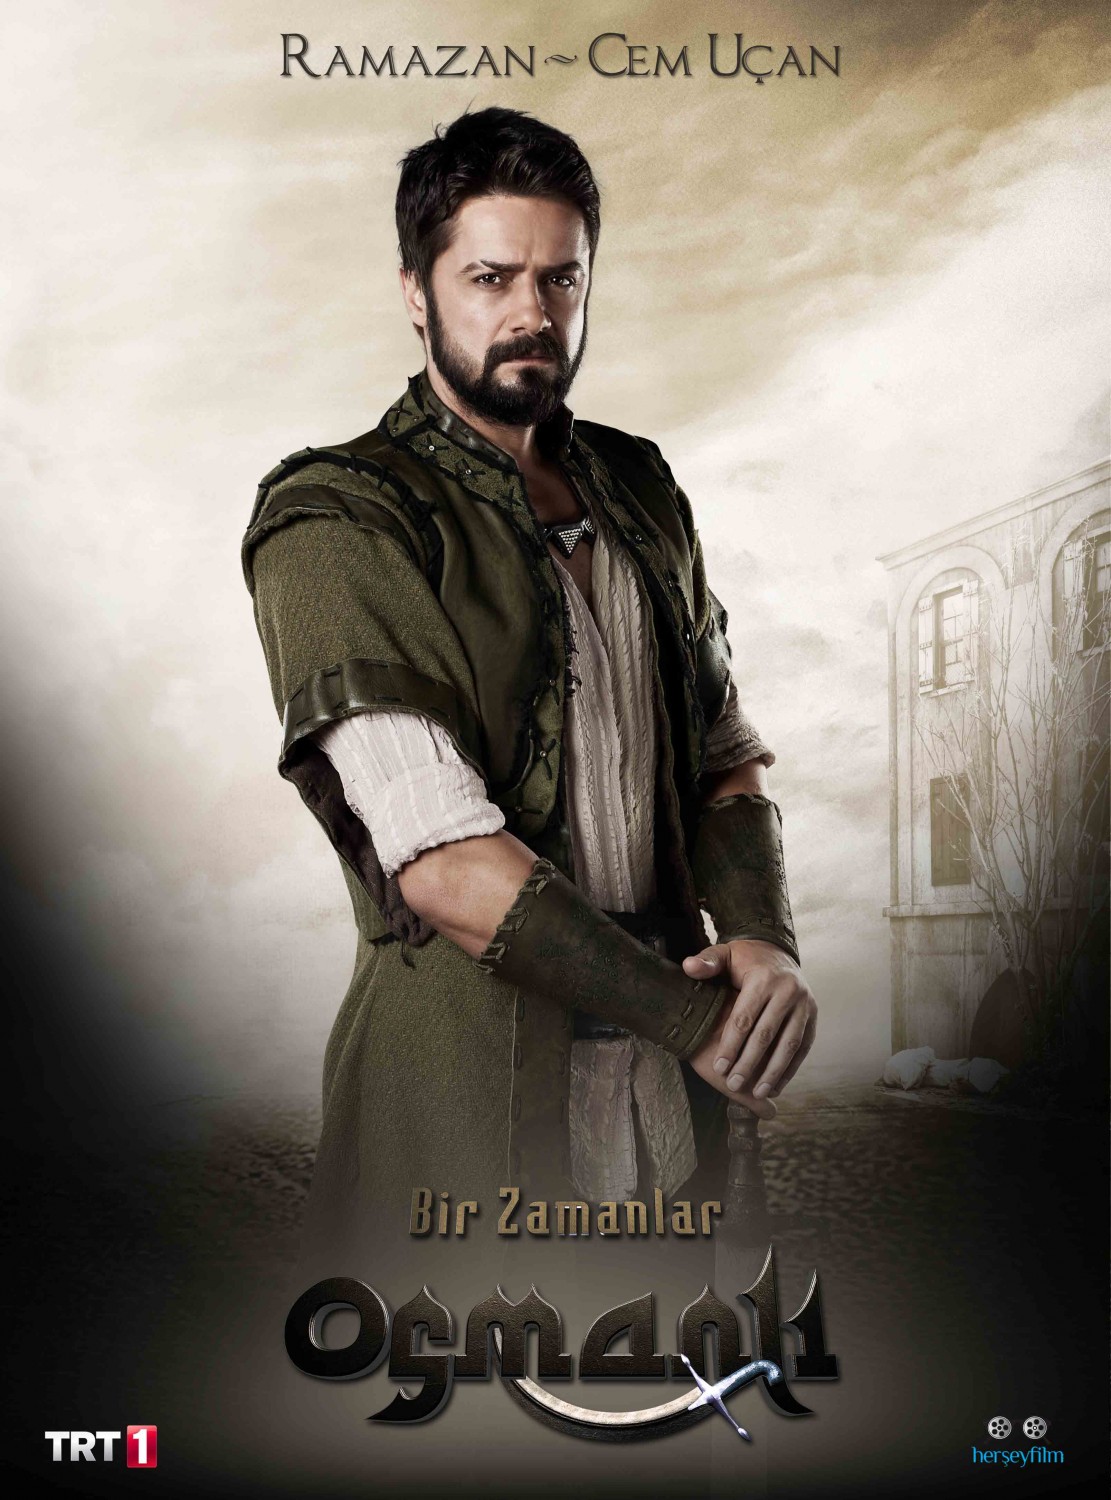 Extra Large TV Poster Image for Bir Zamanlar Osmanli Kiyam (#25 of 26)